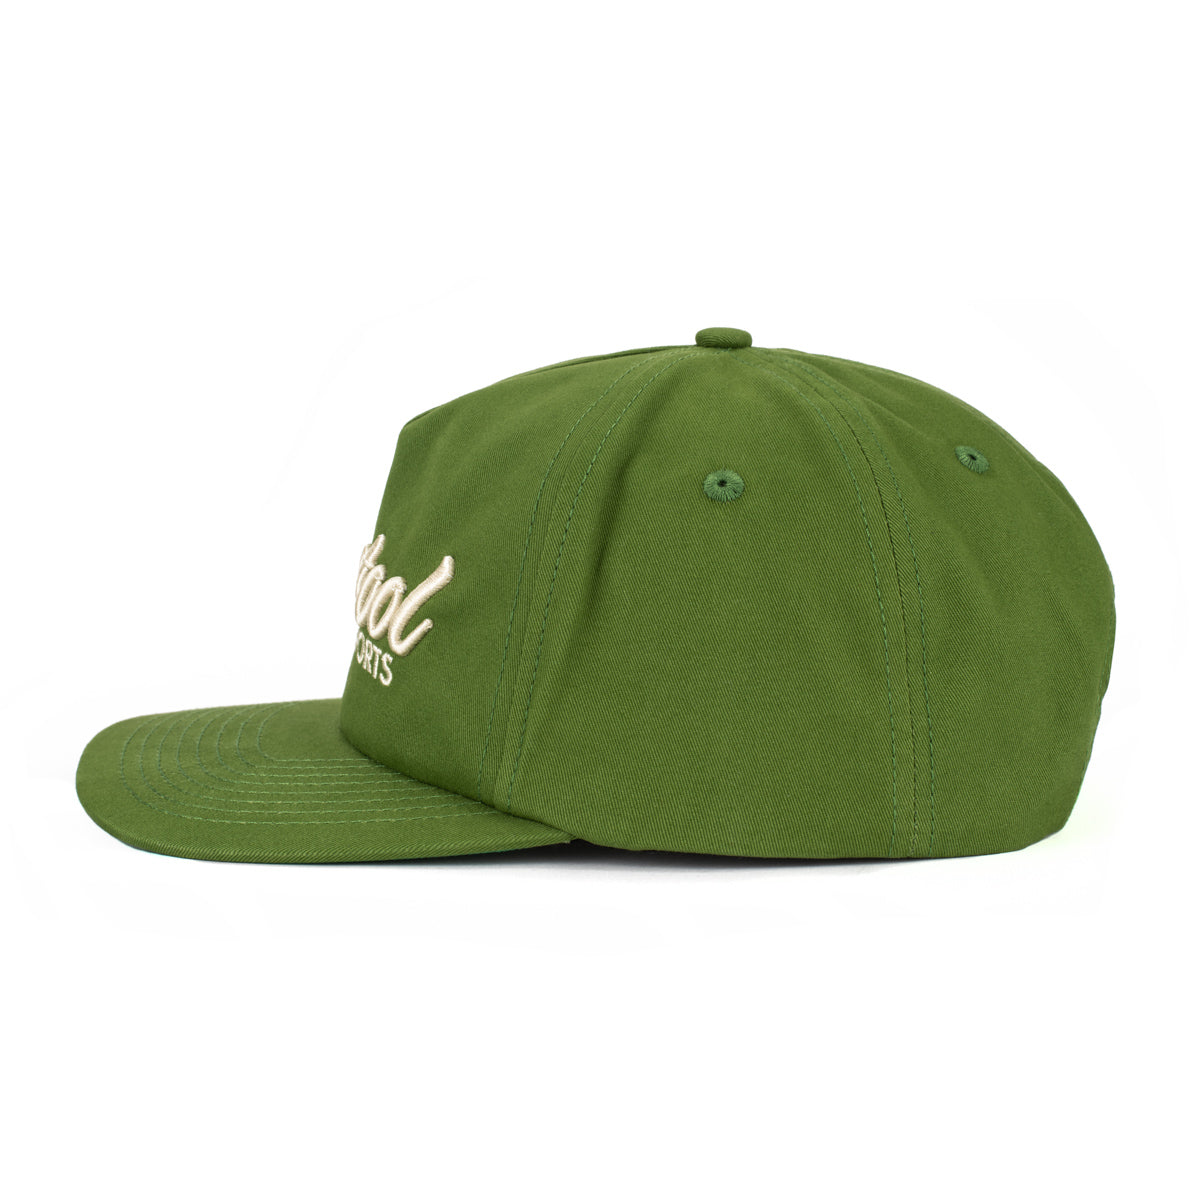 Barstool Sports Retro Snapback Hat-Hats-Barstool Sports-Green-One Size-Barstool Sports